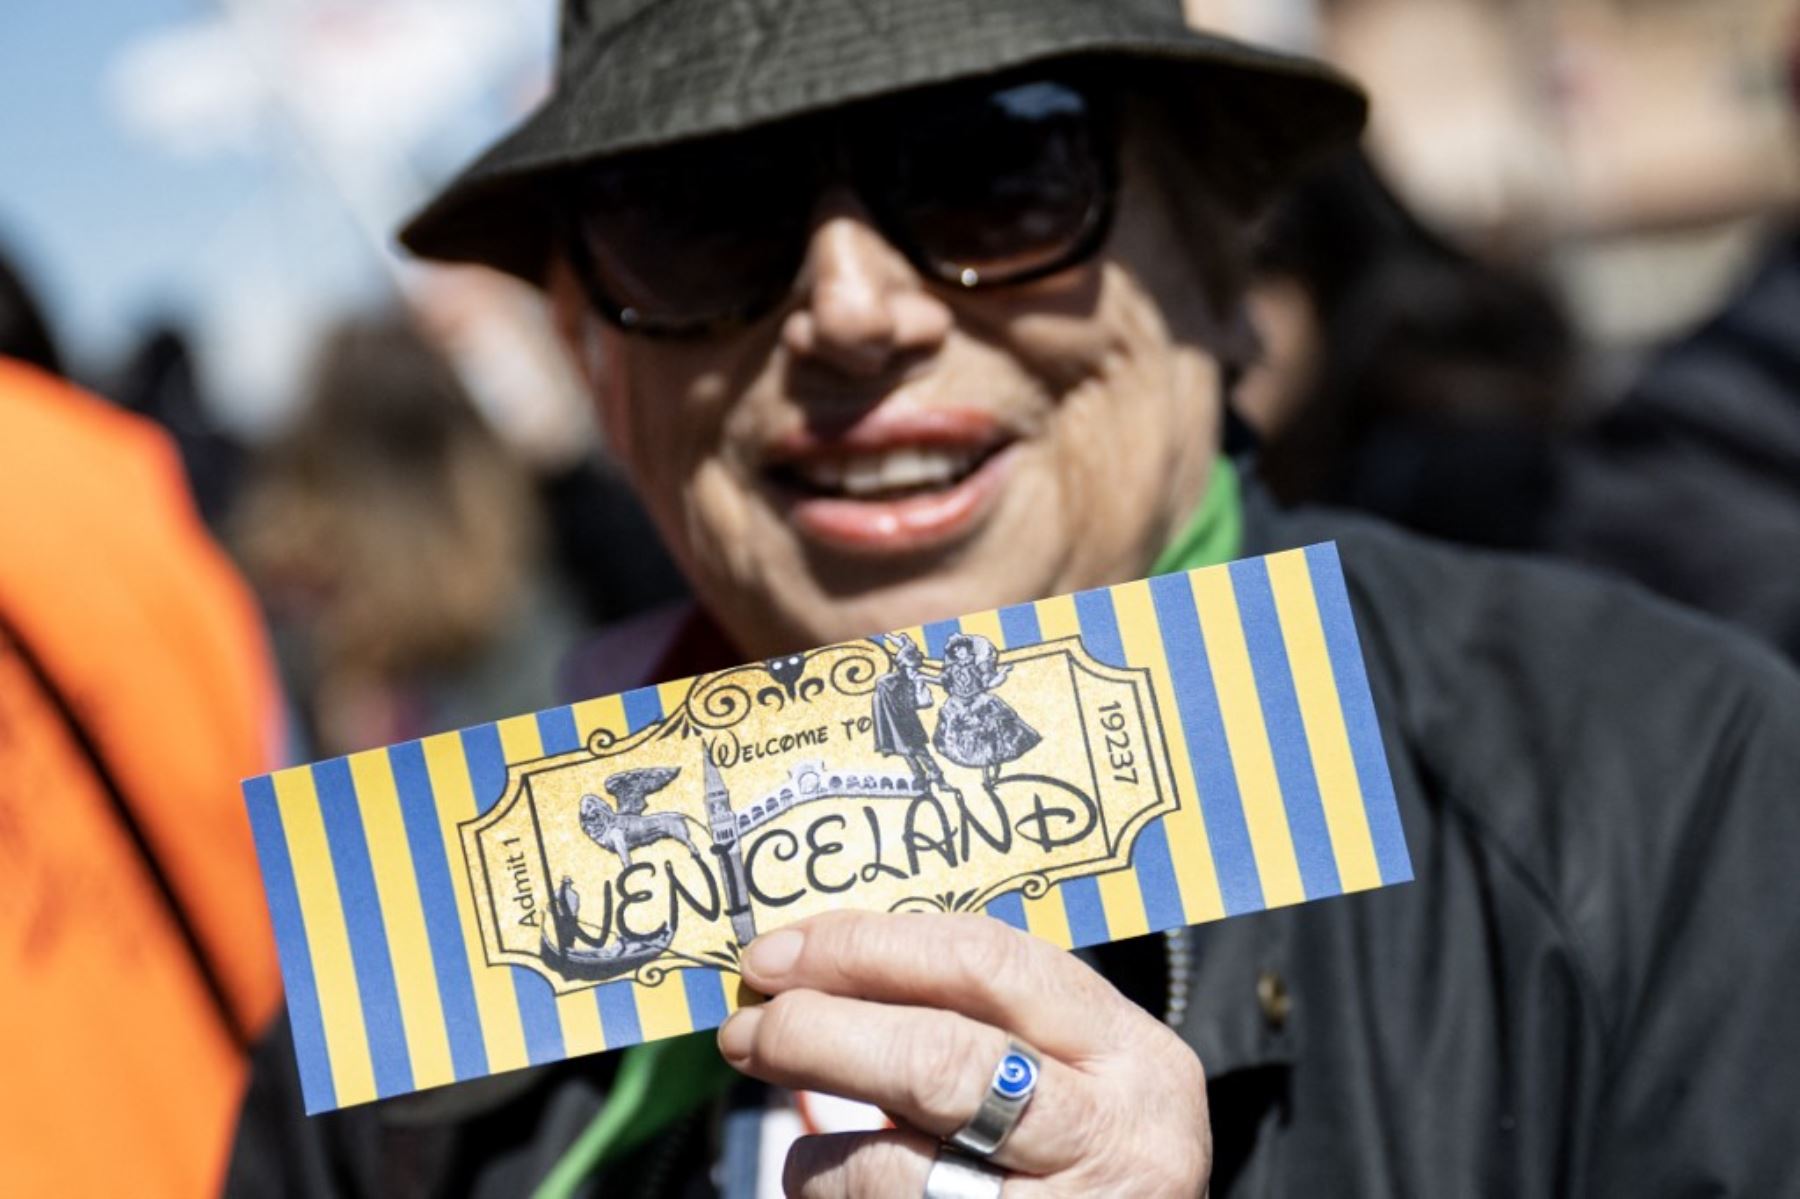 Una mujer sostiene un billete que dice "Bienvenidos a Venecialandia". Foto: AFP